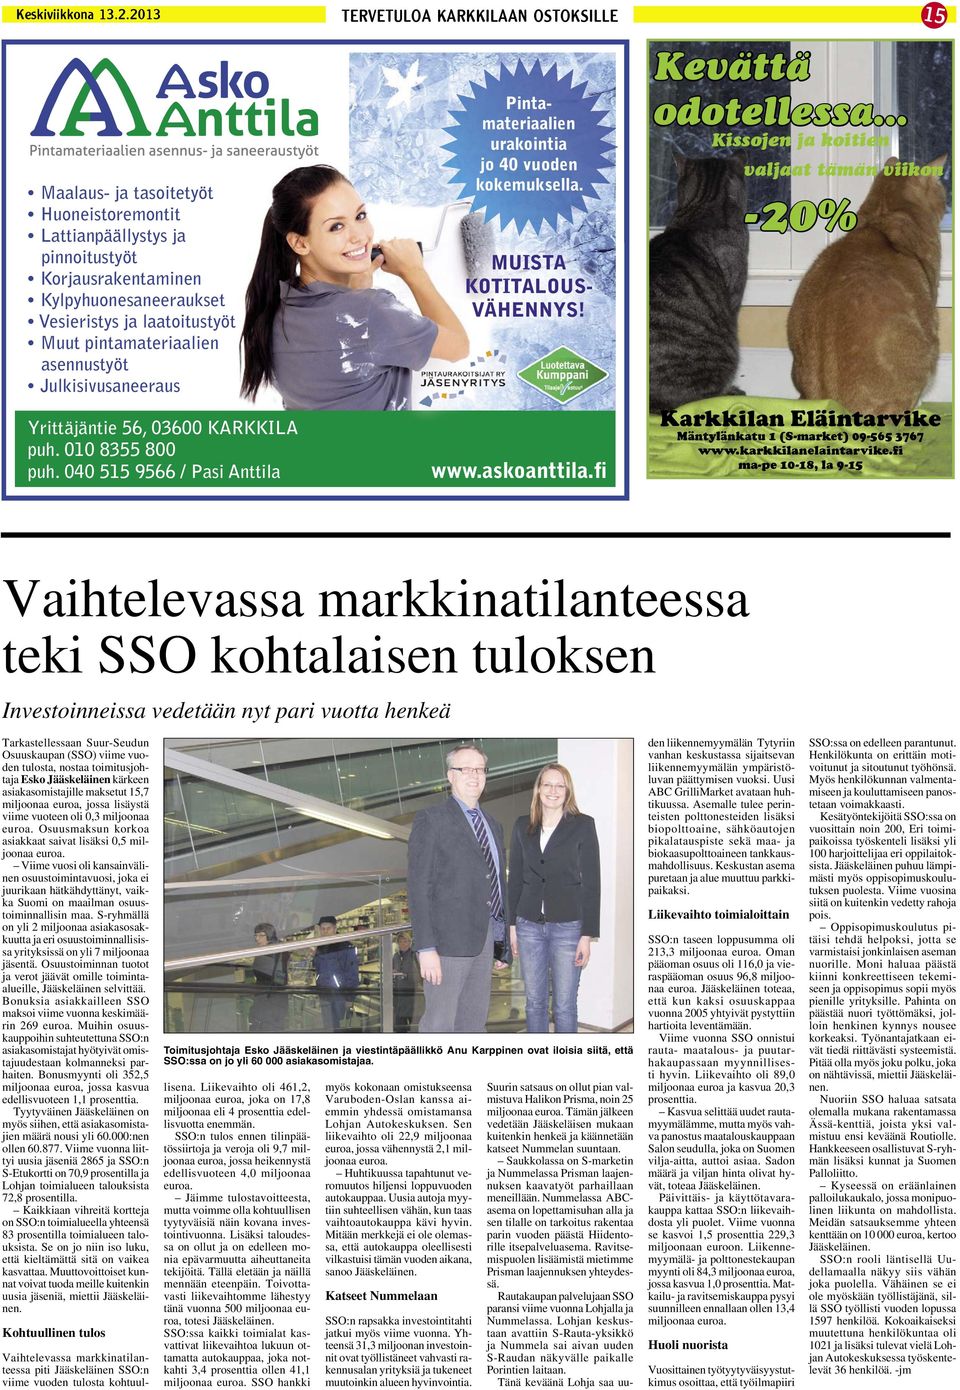 toimitusjohtaja Esko Jääskeläinen kärkeen asiakasomistajille maksetut 15,7 miljoonaa euroa, jossa lisäystä viime vuoteen oli 0,3 miljoonaa euroa.